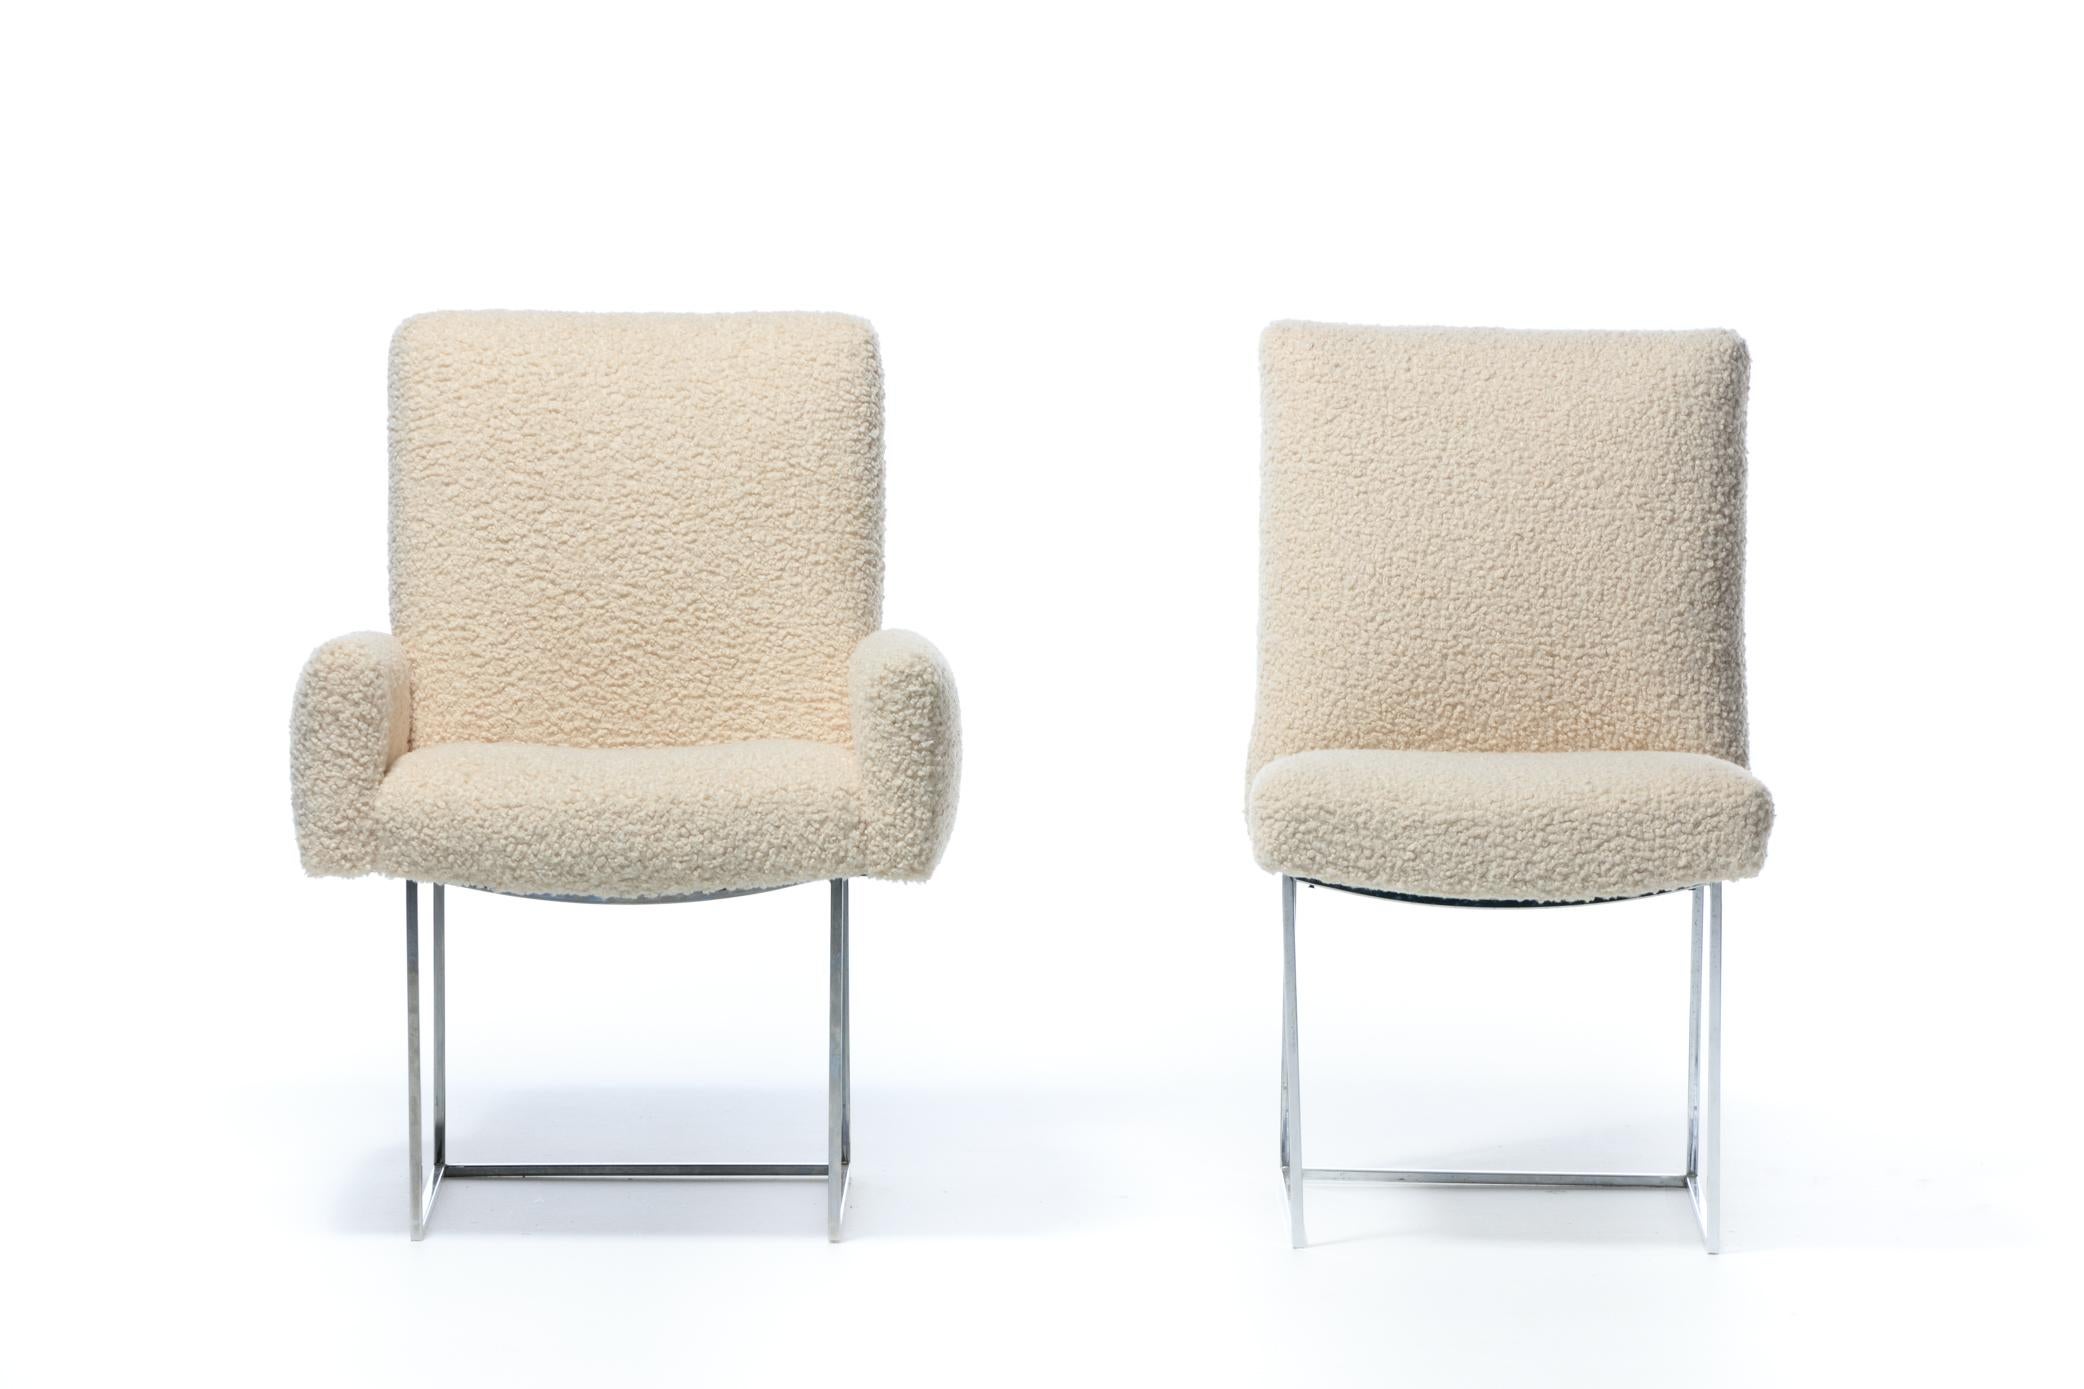 Magnifique ensemble de 14 chaises de salle à manger en acier inoxydable poli, modèle 1187 de Milo Baughman pour Thayer IcCon, fraîchement recouvertes d'un doux tissu bouclé ivoire vers 1970. L'aspect est net, moderne et luxueux. Les armatures